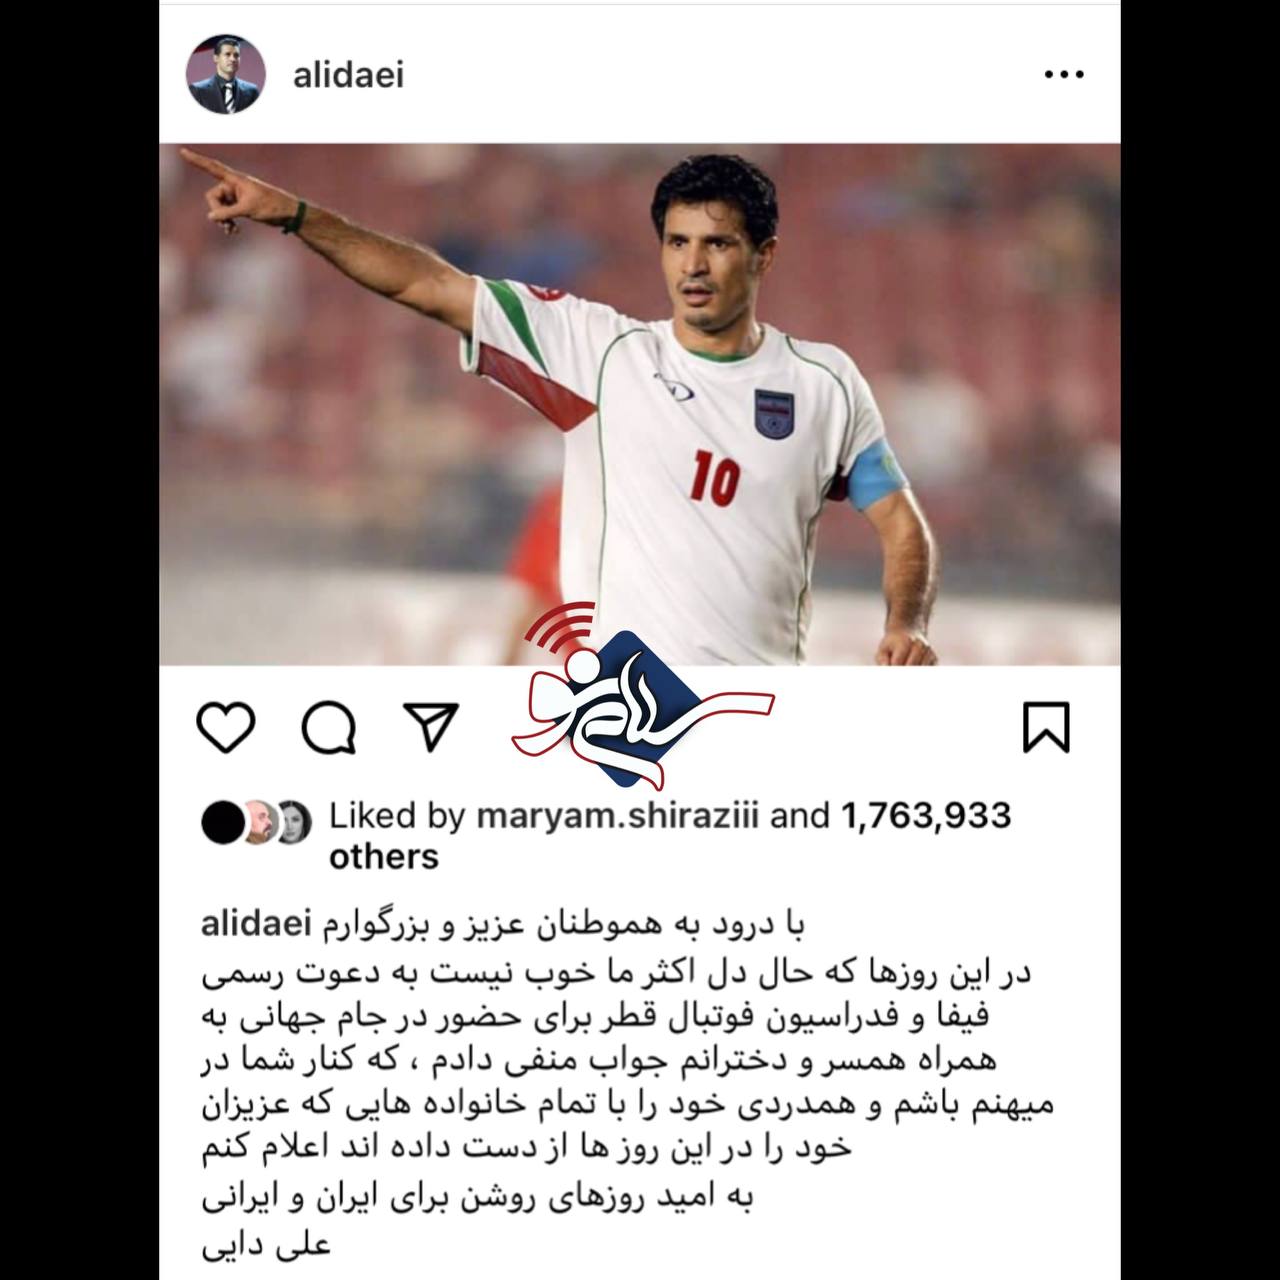 علی دایی دعوت فیفا برای حضور در جام جهانی قطر را به خاطر حمایت از مردم ایران رد کرد + عکس